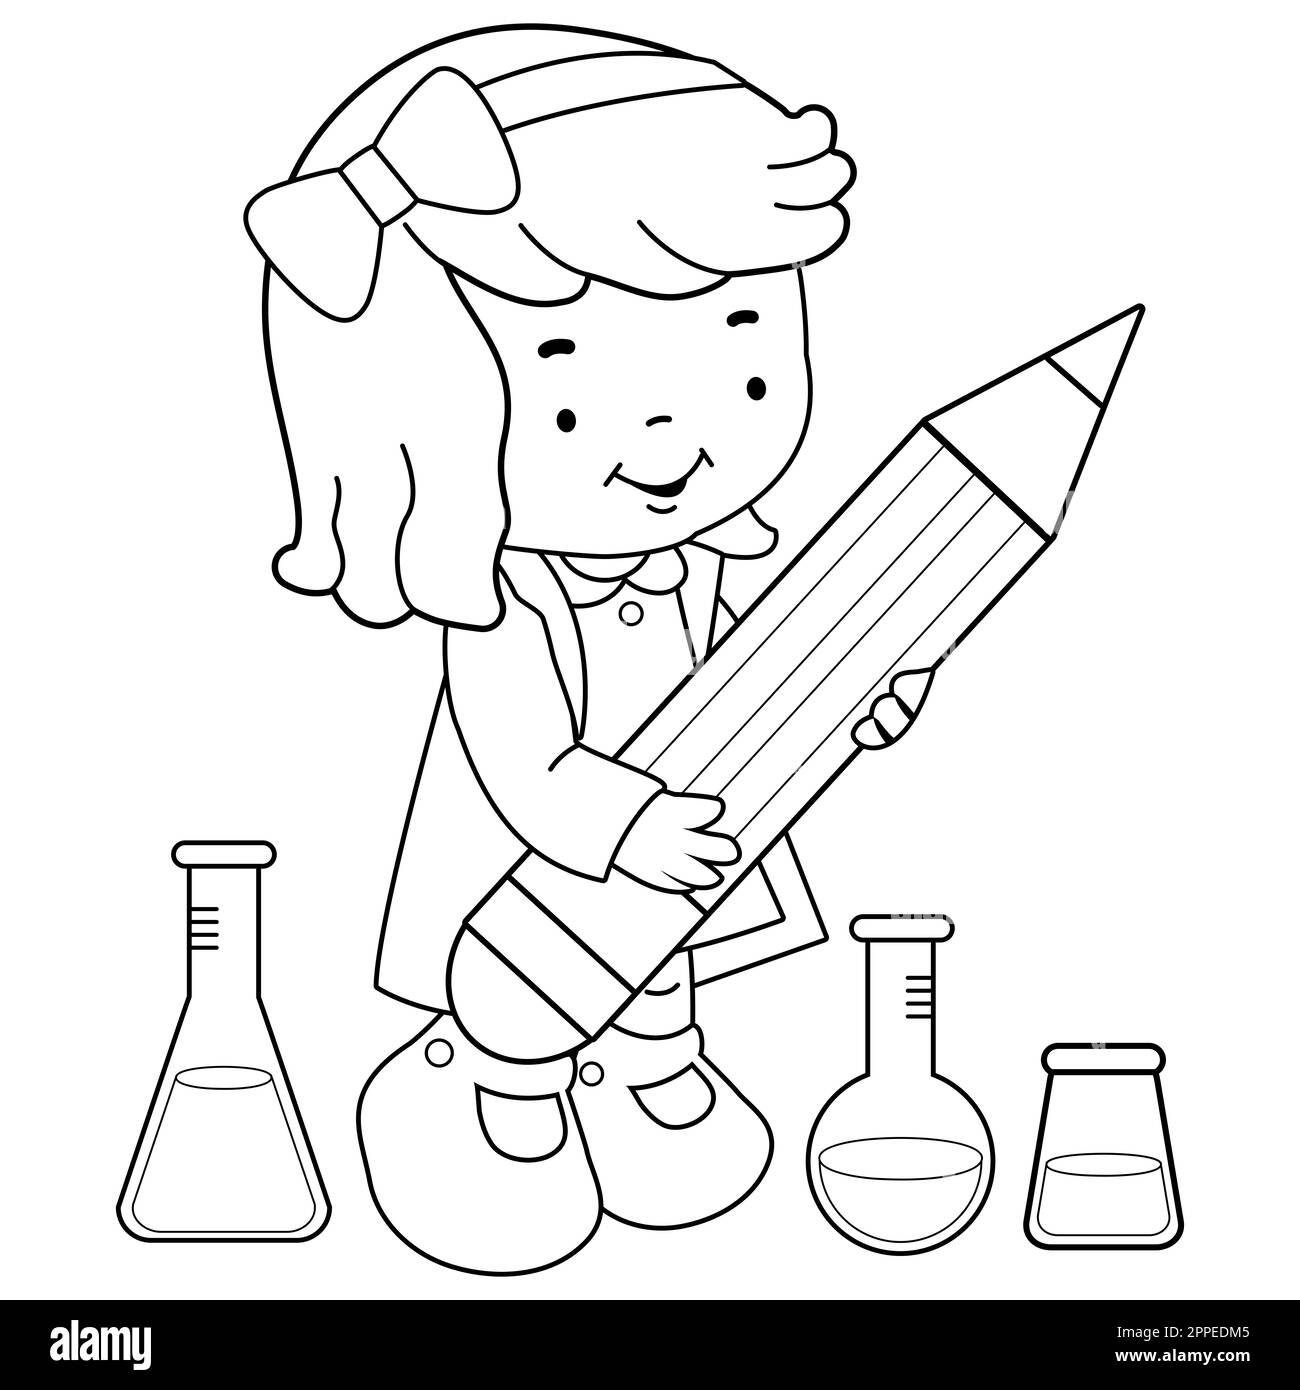 Eine Studentin, die Chemie-Reagenzgläser benutzt, wissenschaftliche Experimente macht und sich Notizen mit einem großen Bleistift macht. Schwarzweiß-Farbseite Stockfoto